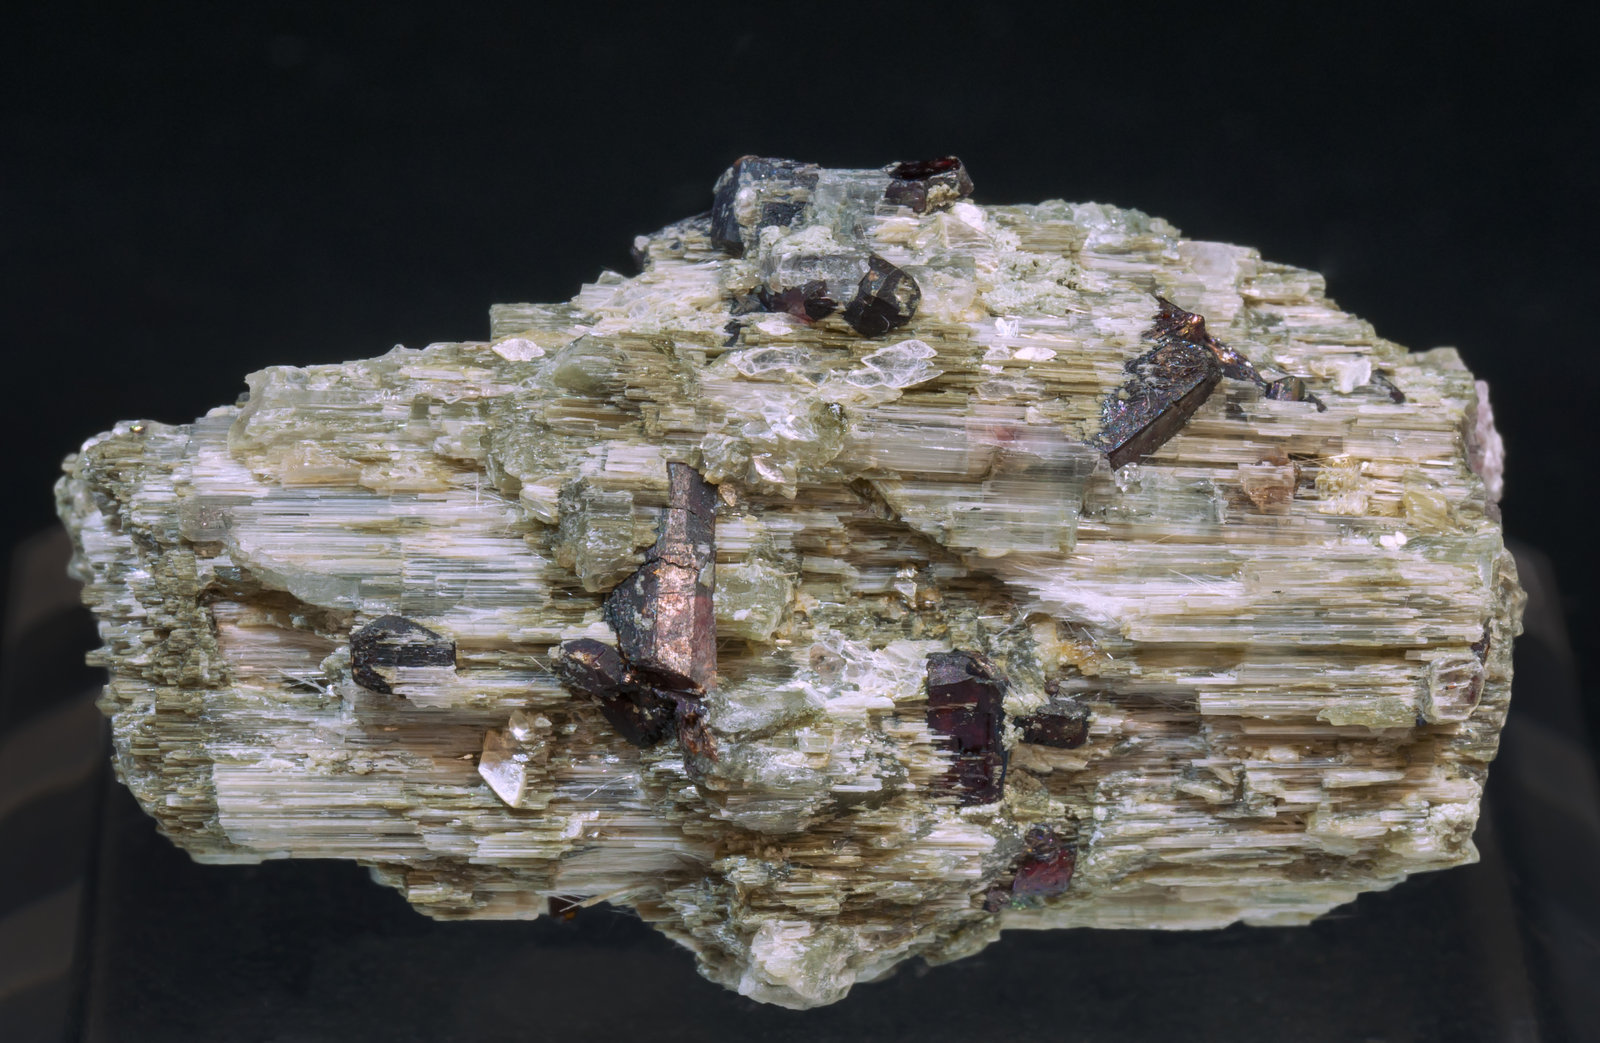 specimens/s_imagesAG3/Lepidolite-MX70AG3r.jpg